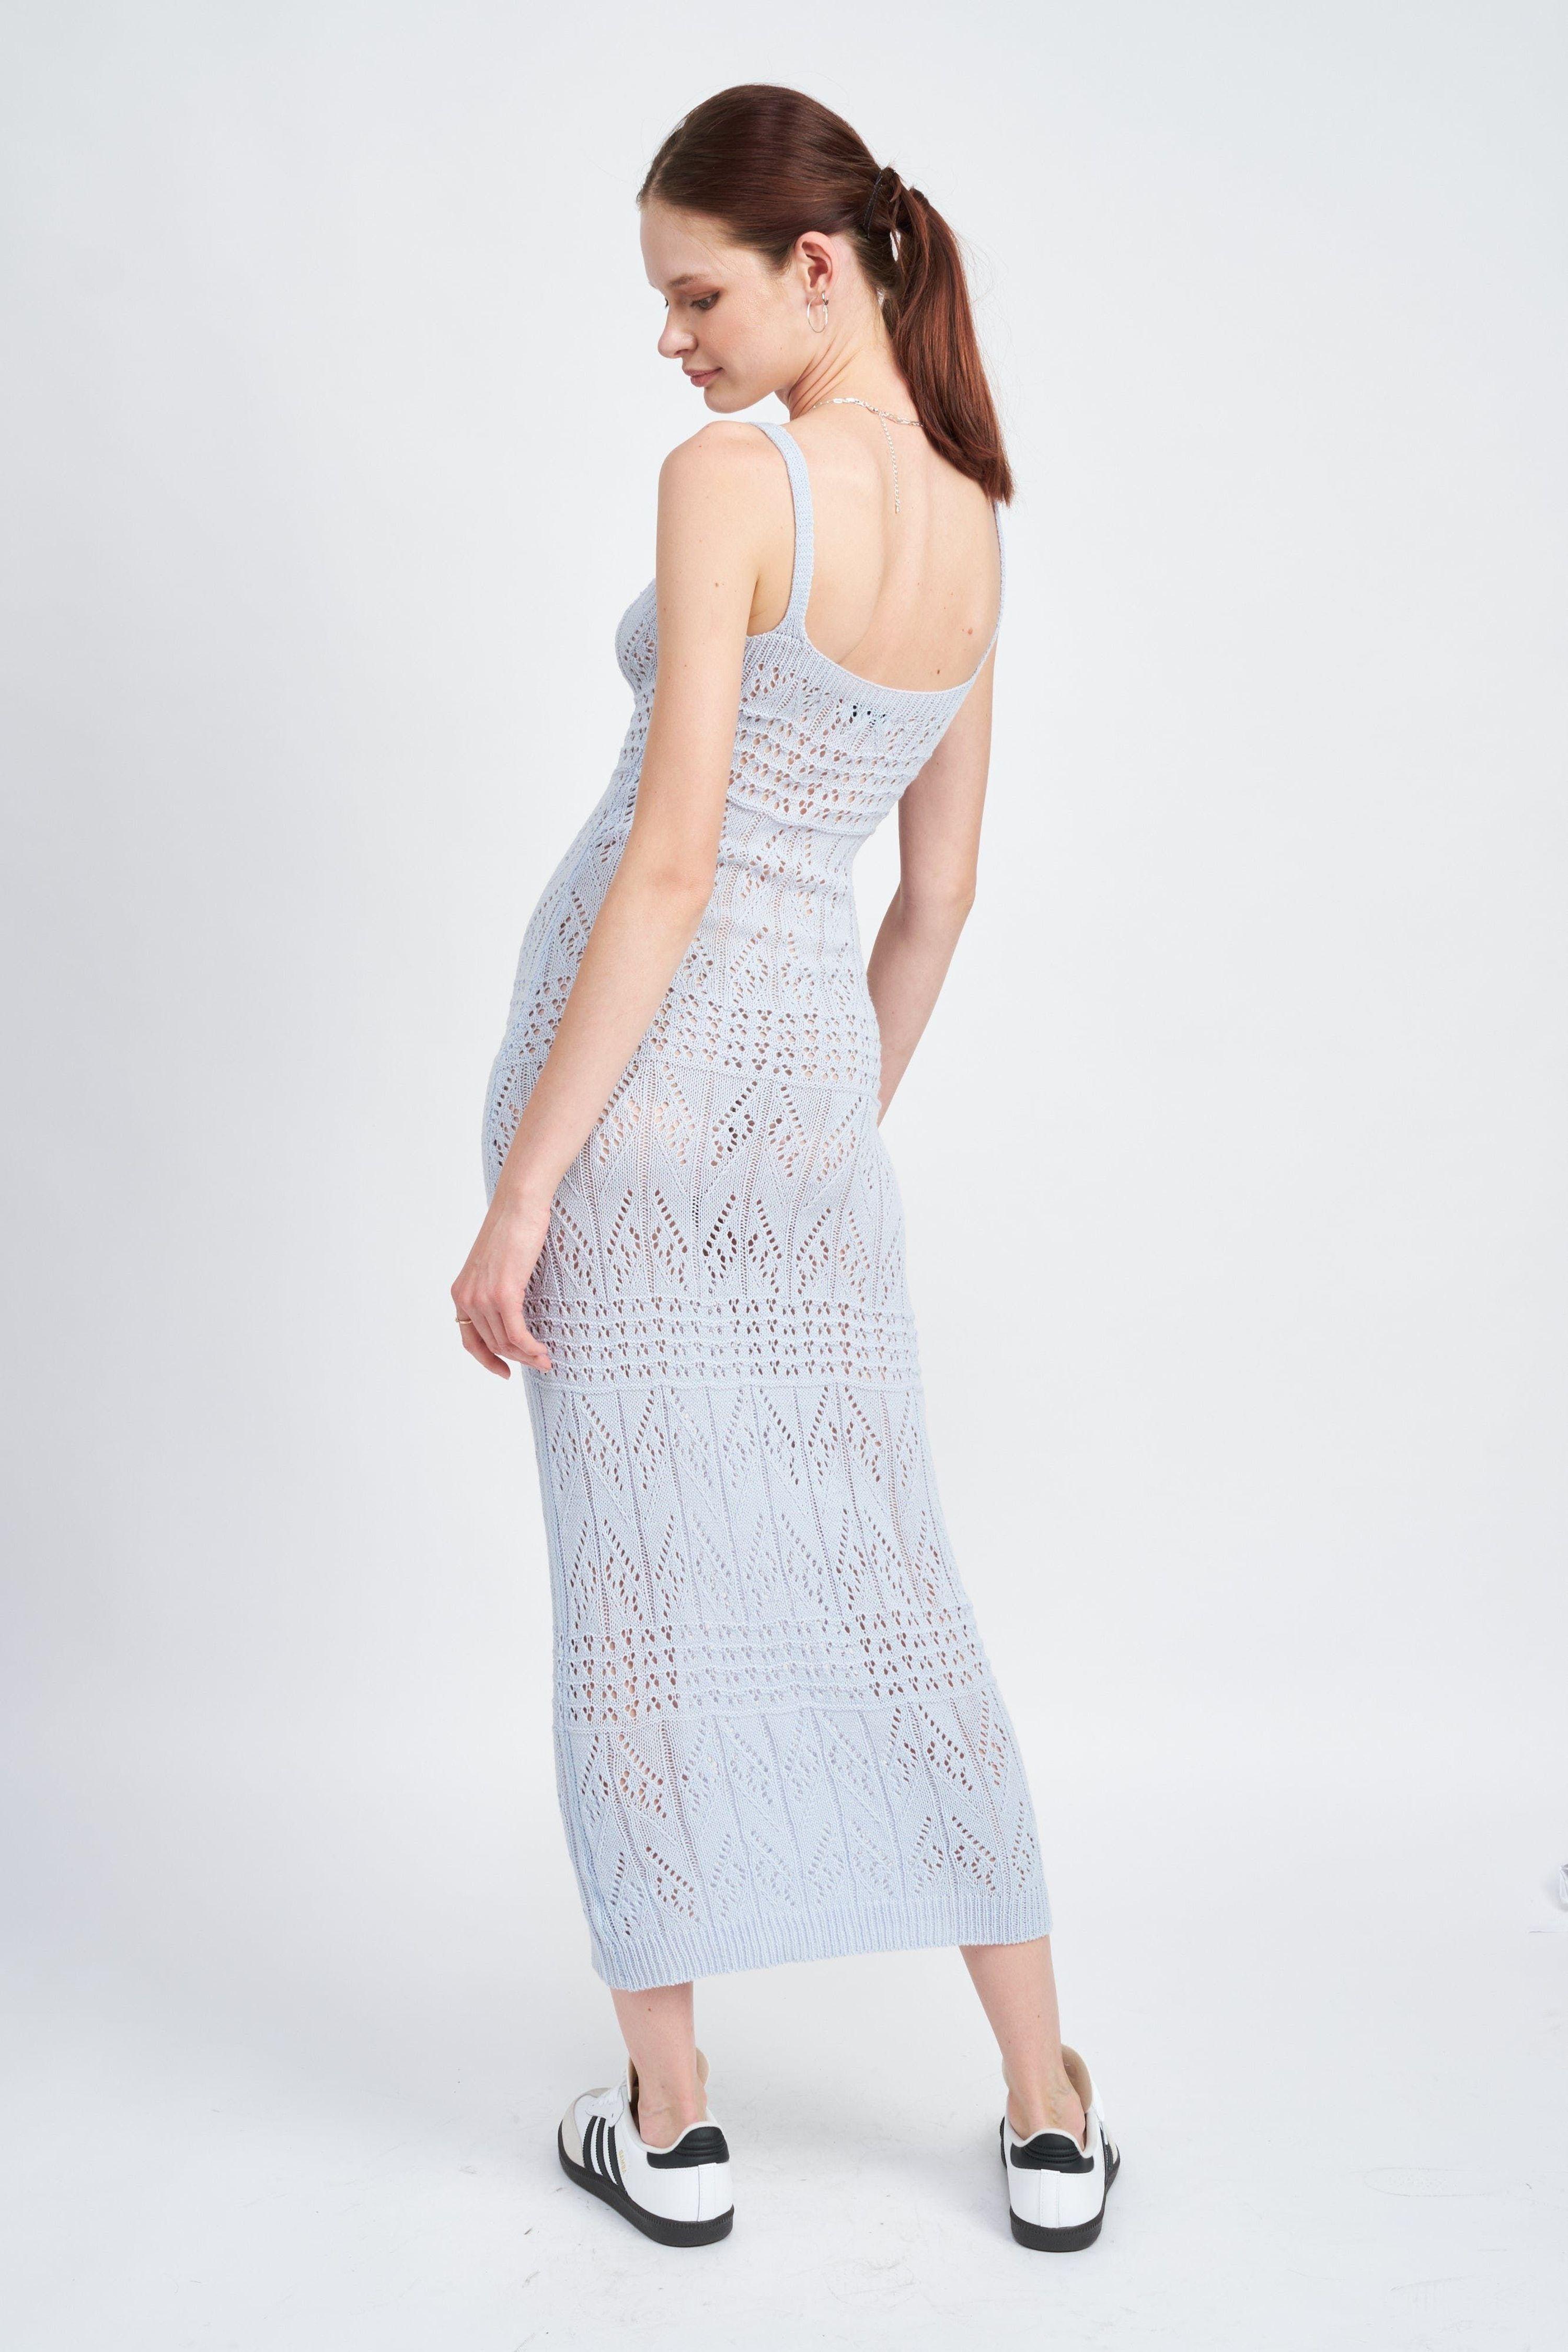 emory park Elle Crochet Dress in White | Lyst